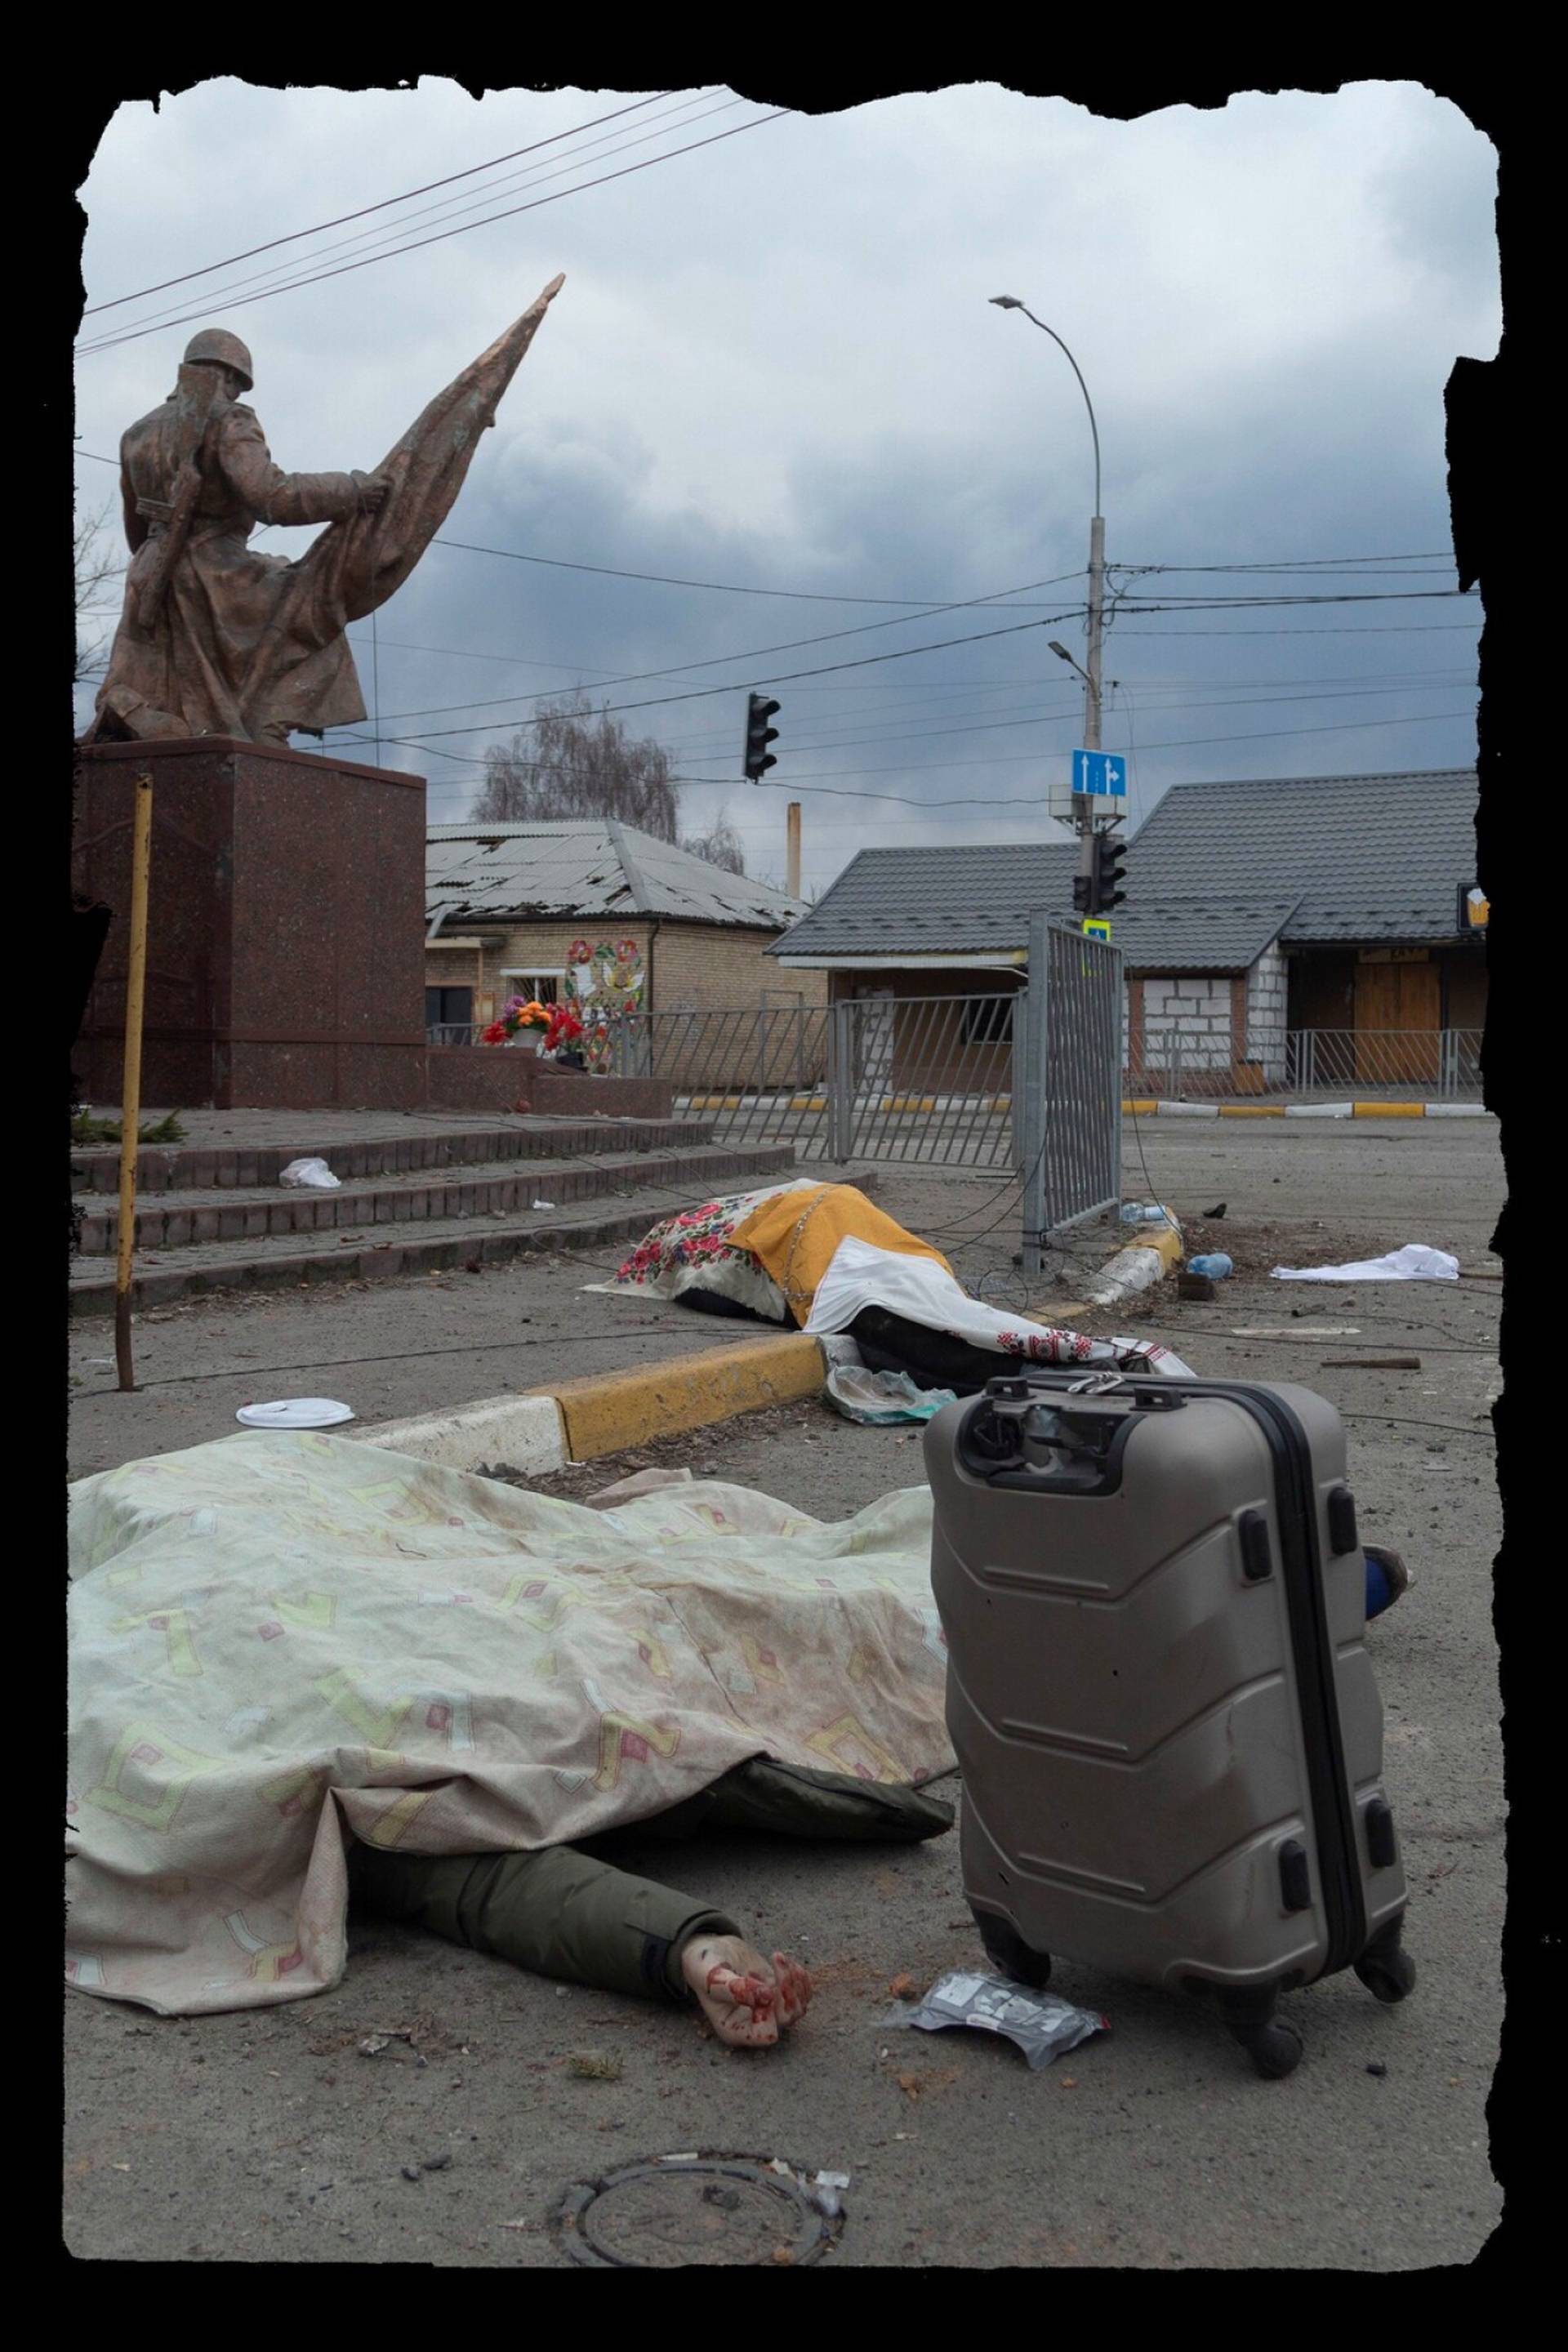 Тела  накрыты на месте смерти в ожидании вывоза. Статуя на заднем плане — памятник украинским героям, павшим в Великой Отечественной войне. 